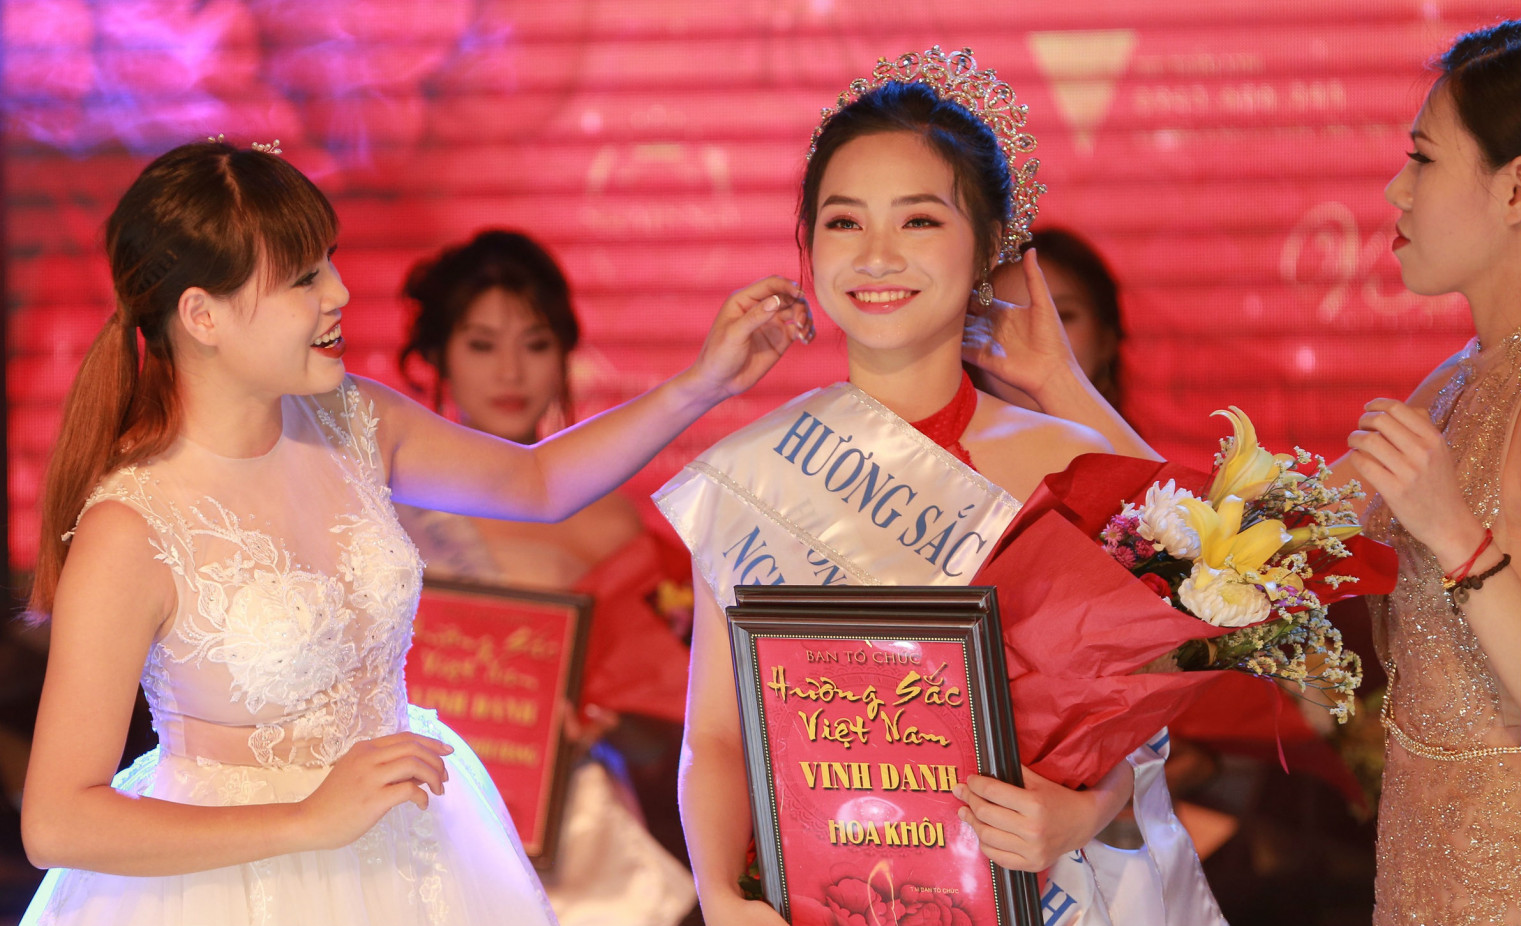 Vượt qua nhiều thí sinh xuất sắc là học sinh, sinh viên từ nhiều trường học trên toàn quốc, Đoàn Yến Chi đã giành ngôi vị Hoa khôi cuộc thi Hương sắc Việt Nam 2019. 